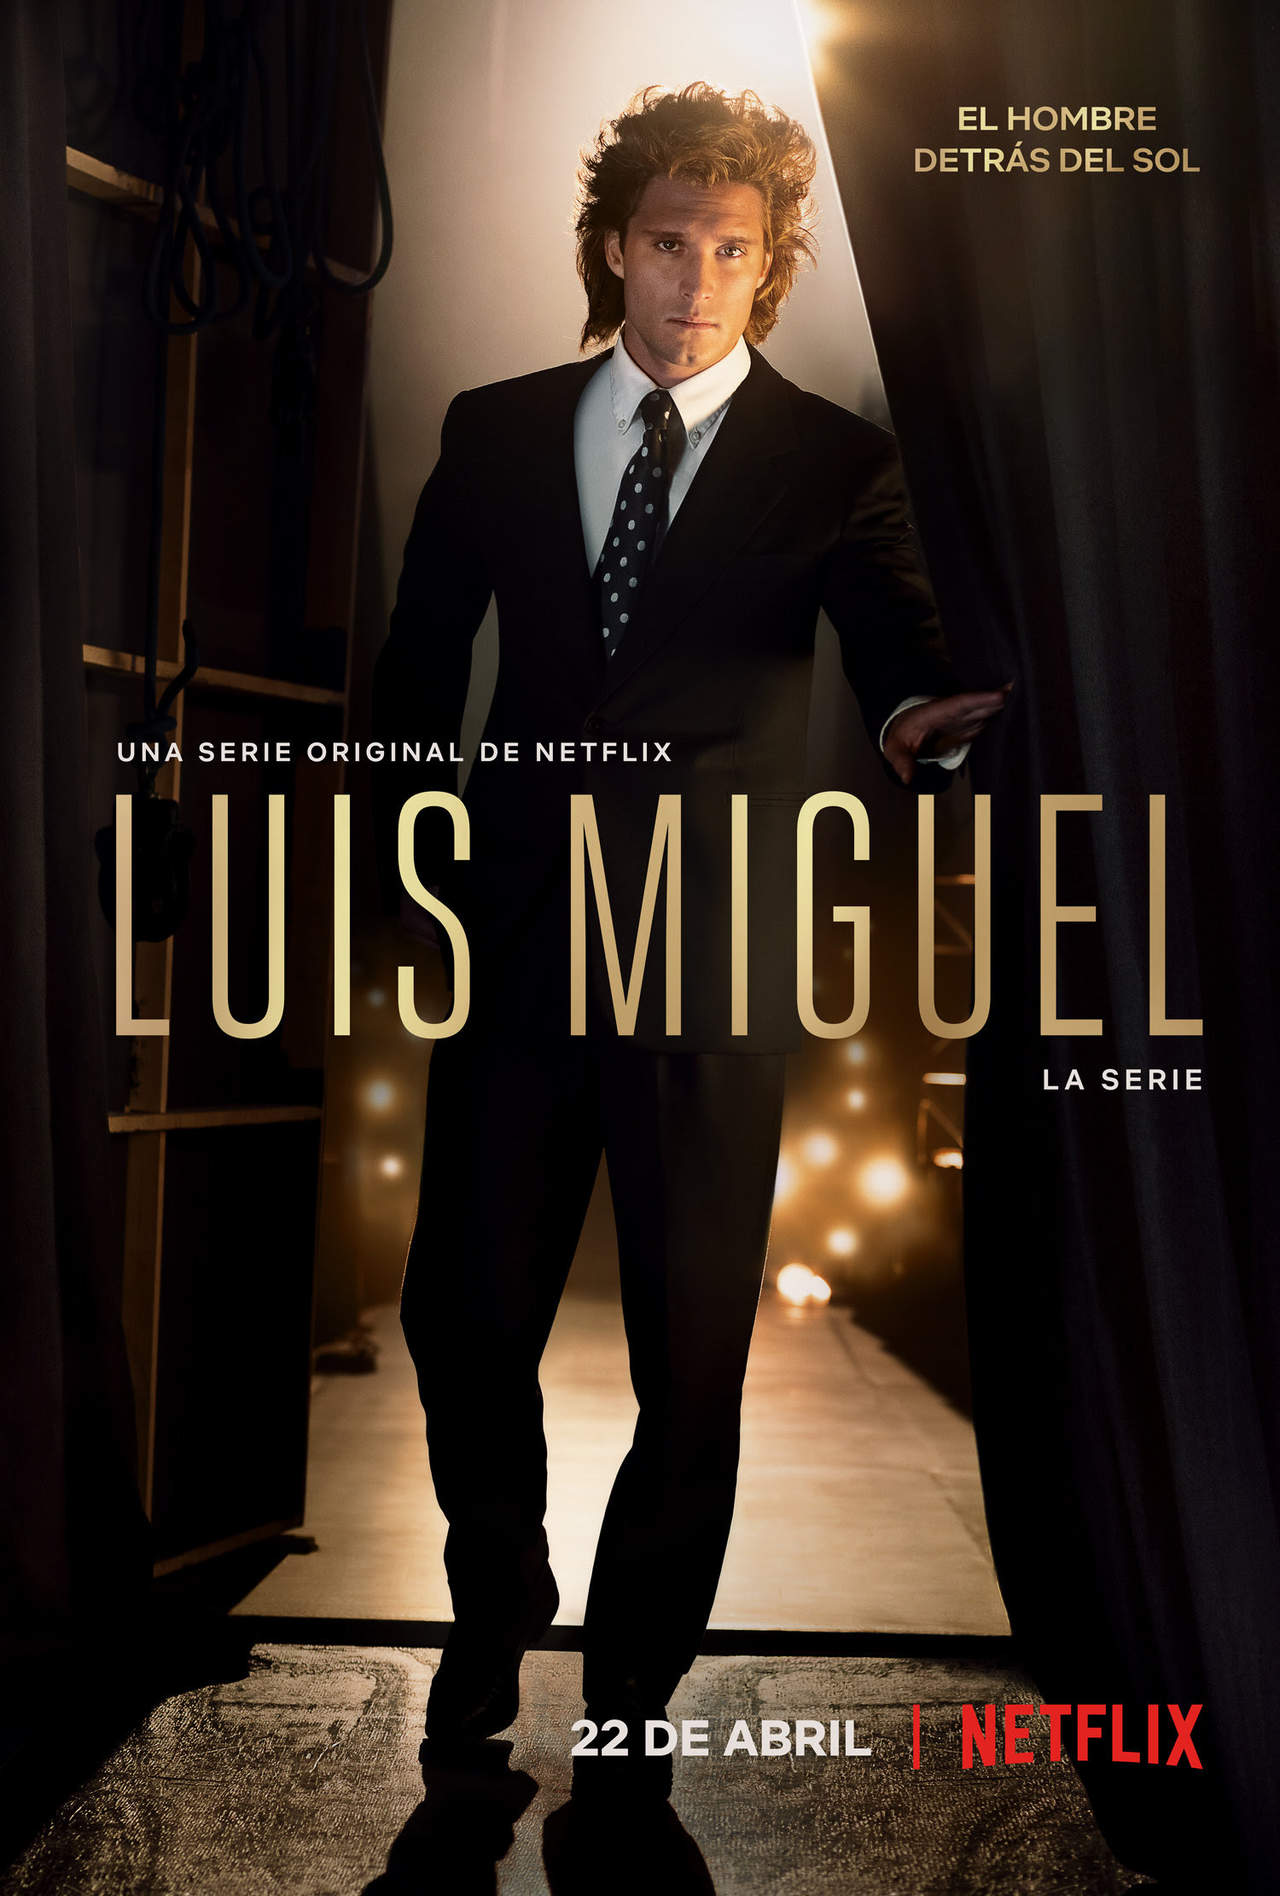 Luis Miguel La Serie estará disponible el 22 de abril. (ARCHIVO)